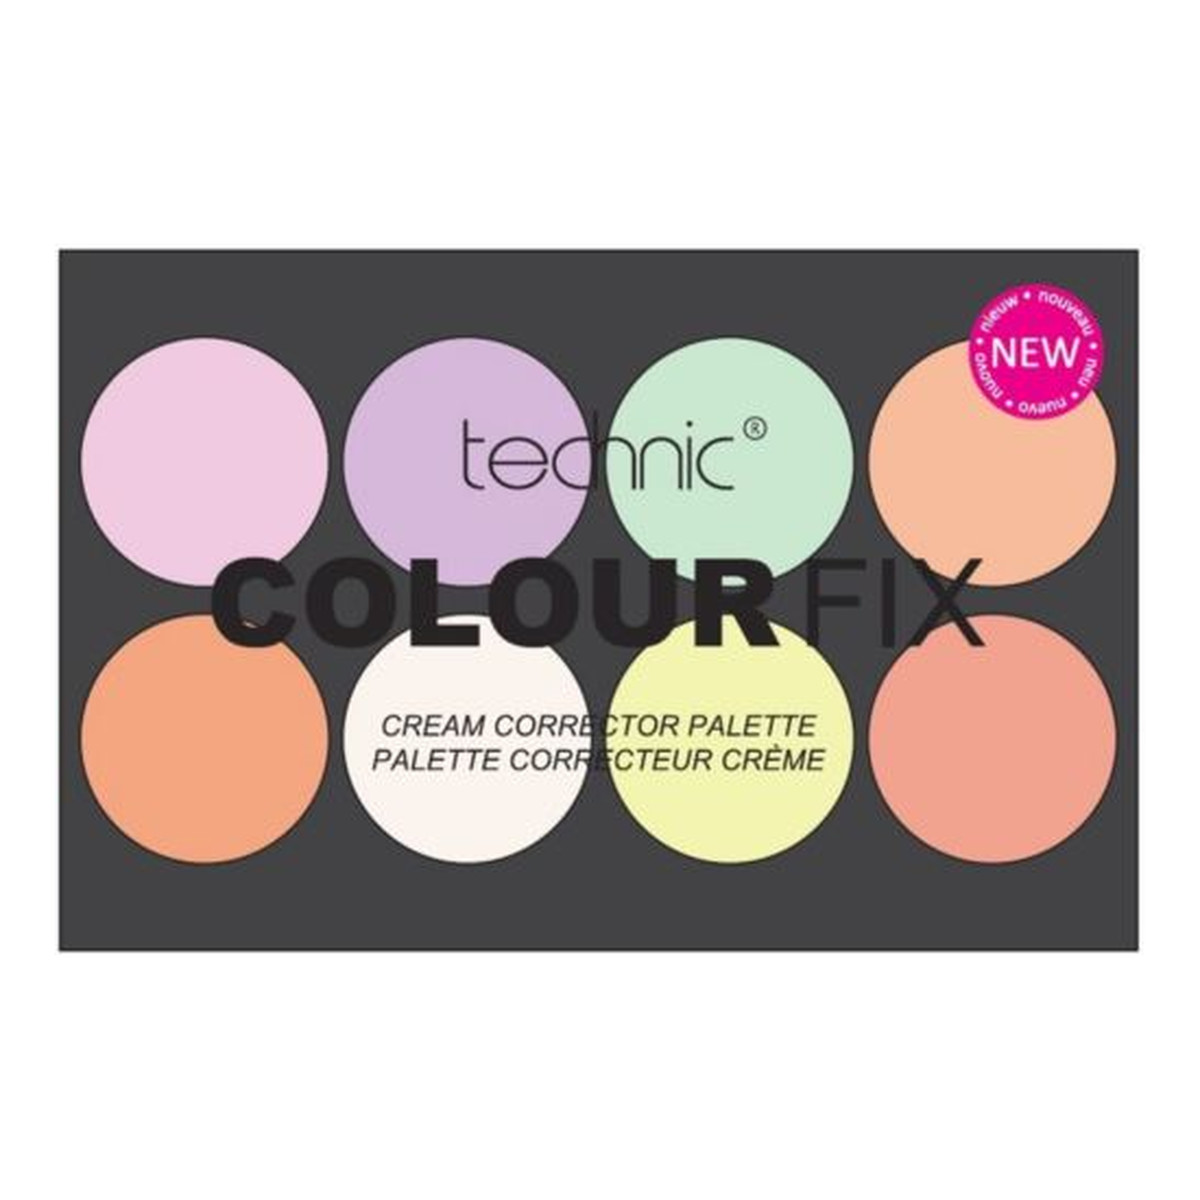 Technic Colour Fix paleta 8 korektorów do twarzy